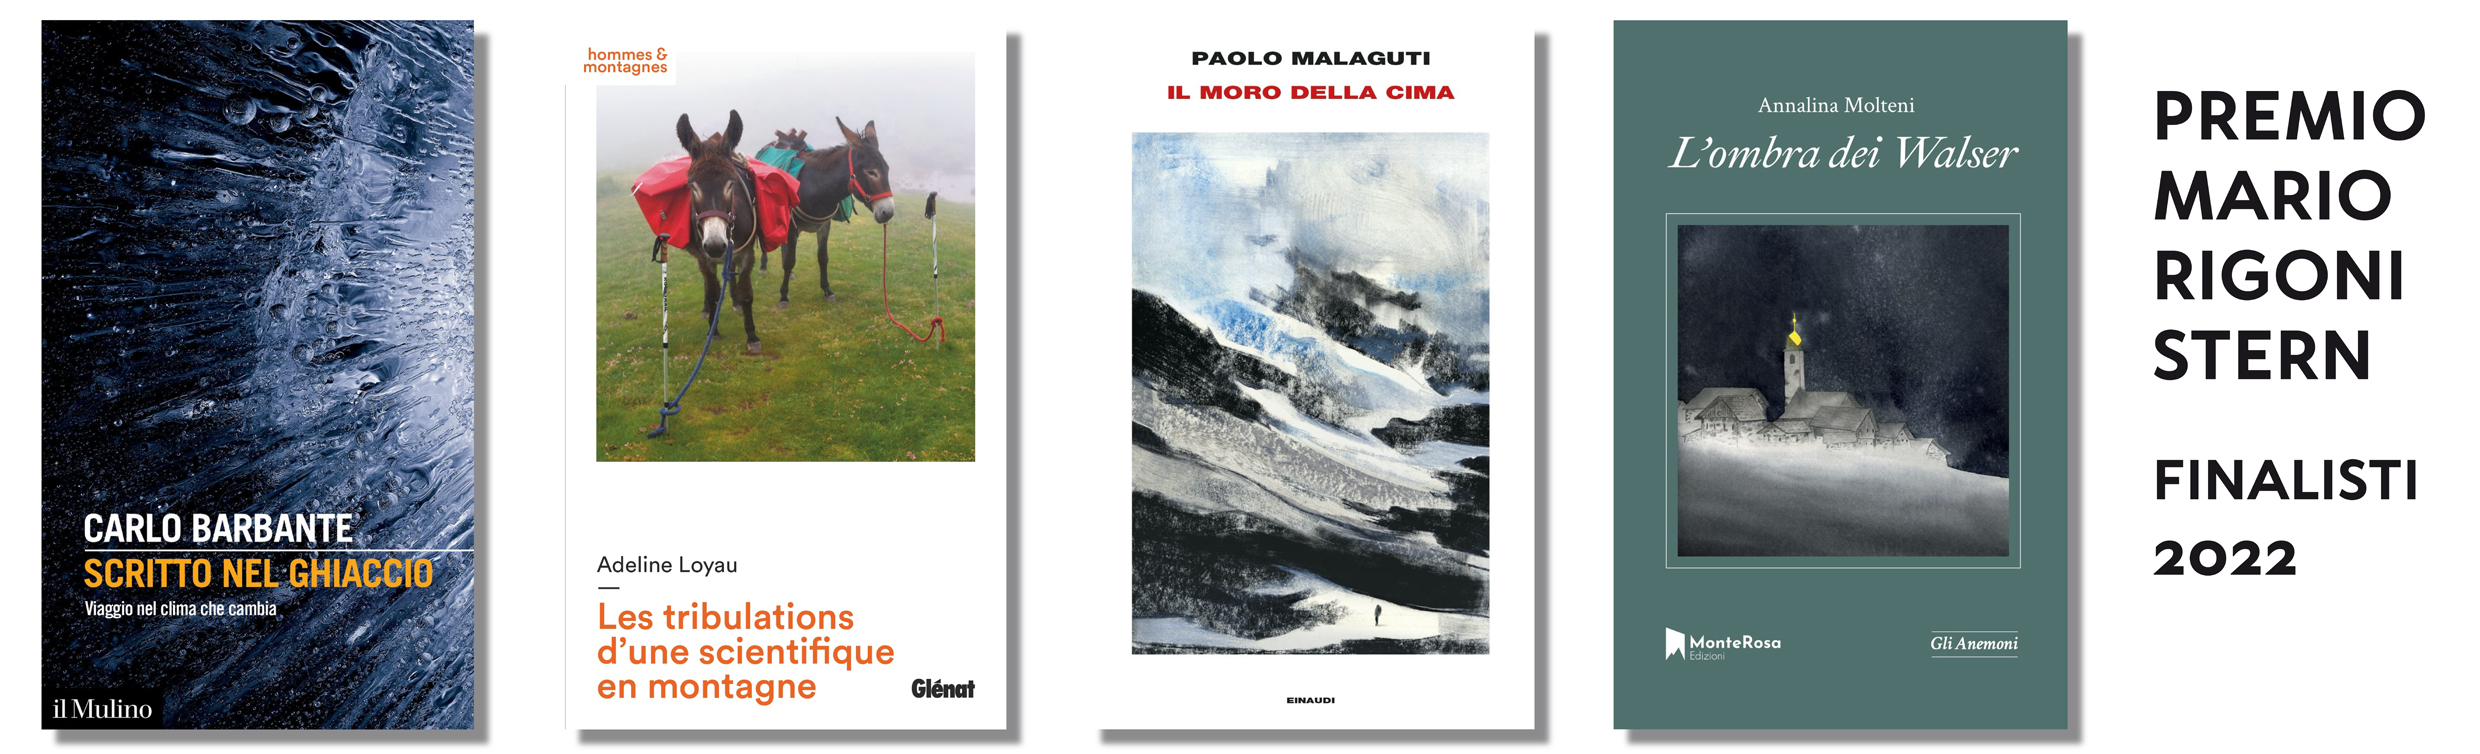 Premio Mario Rigoni Stern: ecco i quattro finalisti  del premio letterario